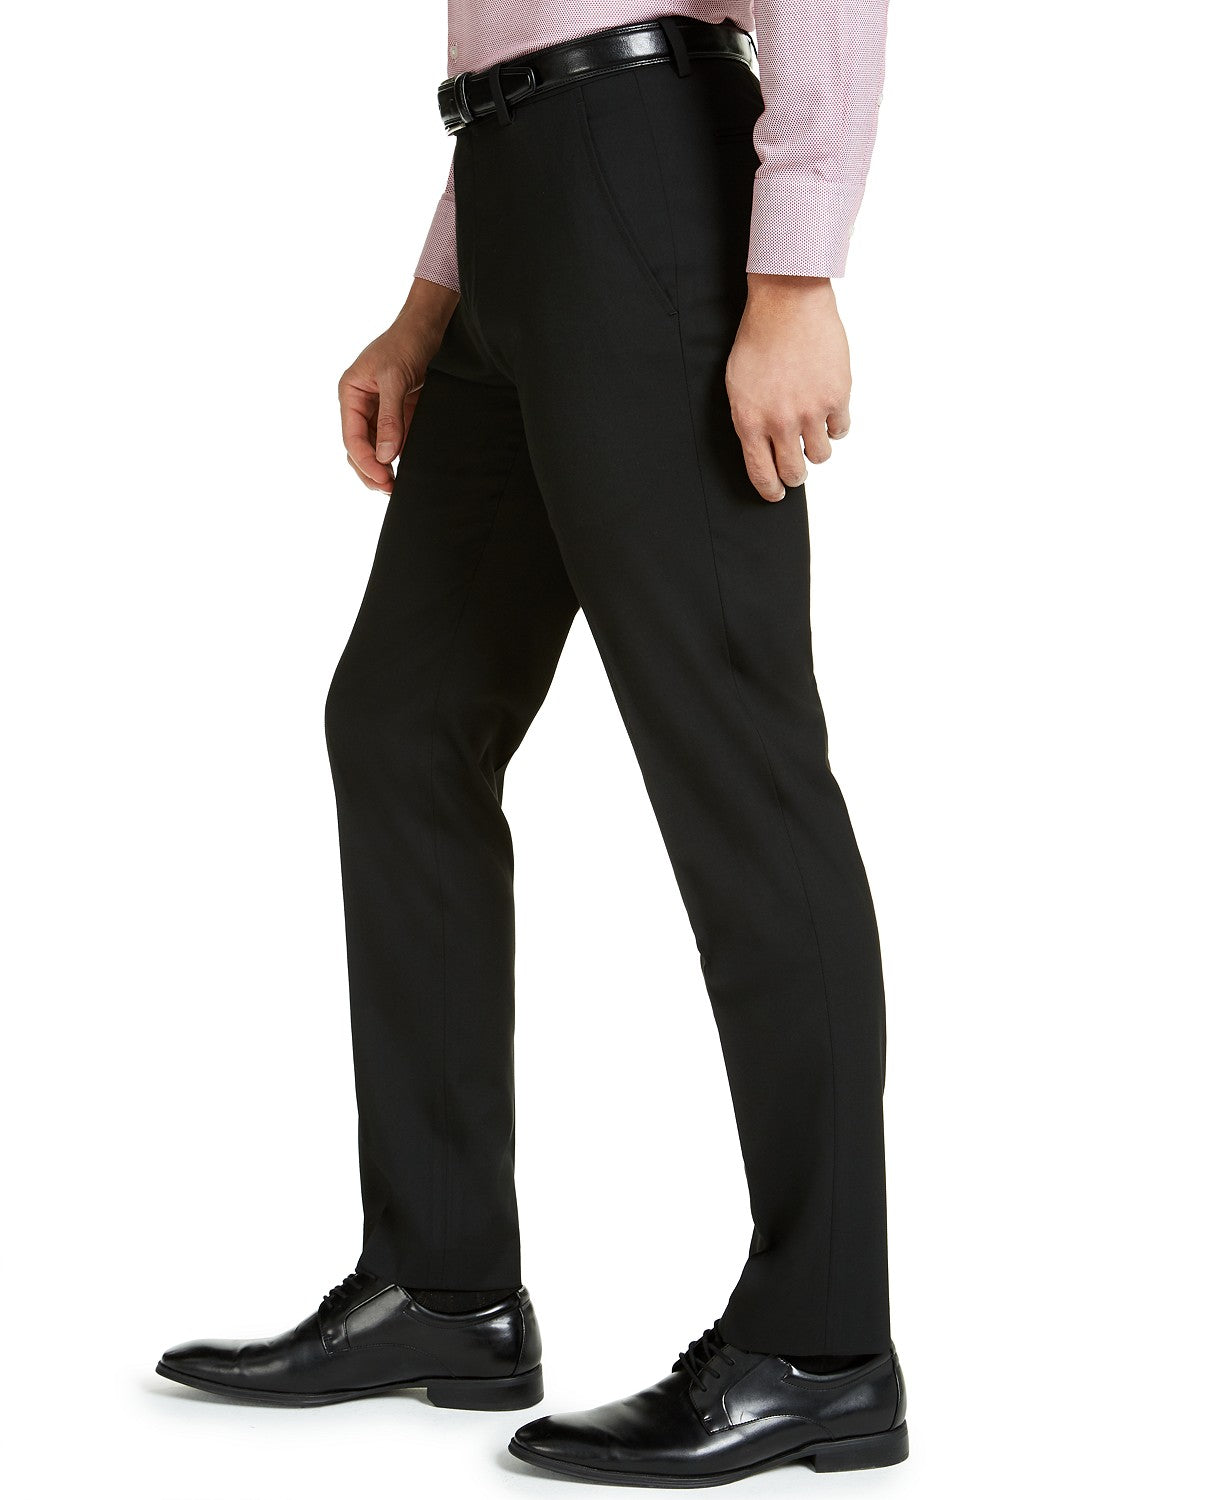 Alfani Men's 2 Piece Suit Black 36R / 30 x 30 Slim Fit Stretch Solid